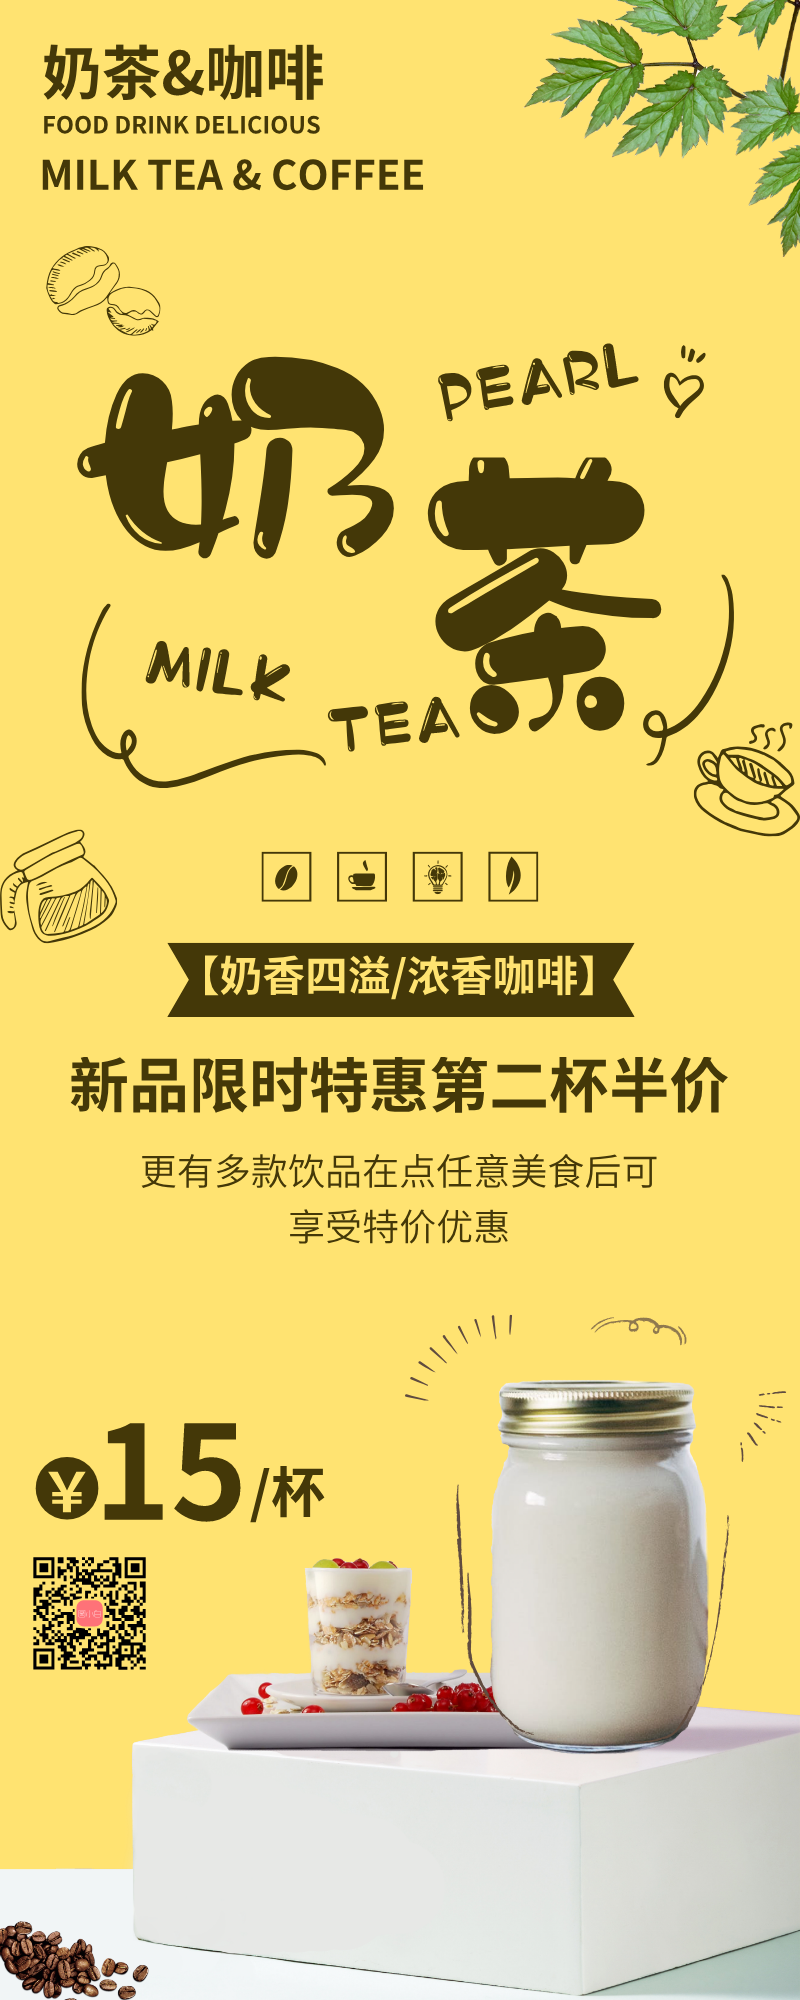 简约奶茶饮品新品上市特惠易拉宝